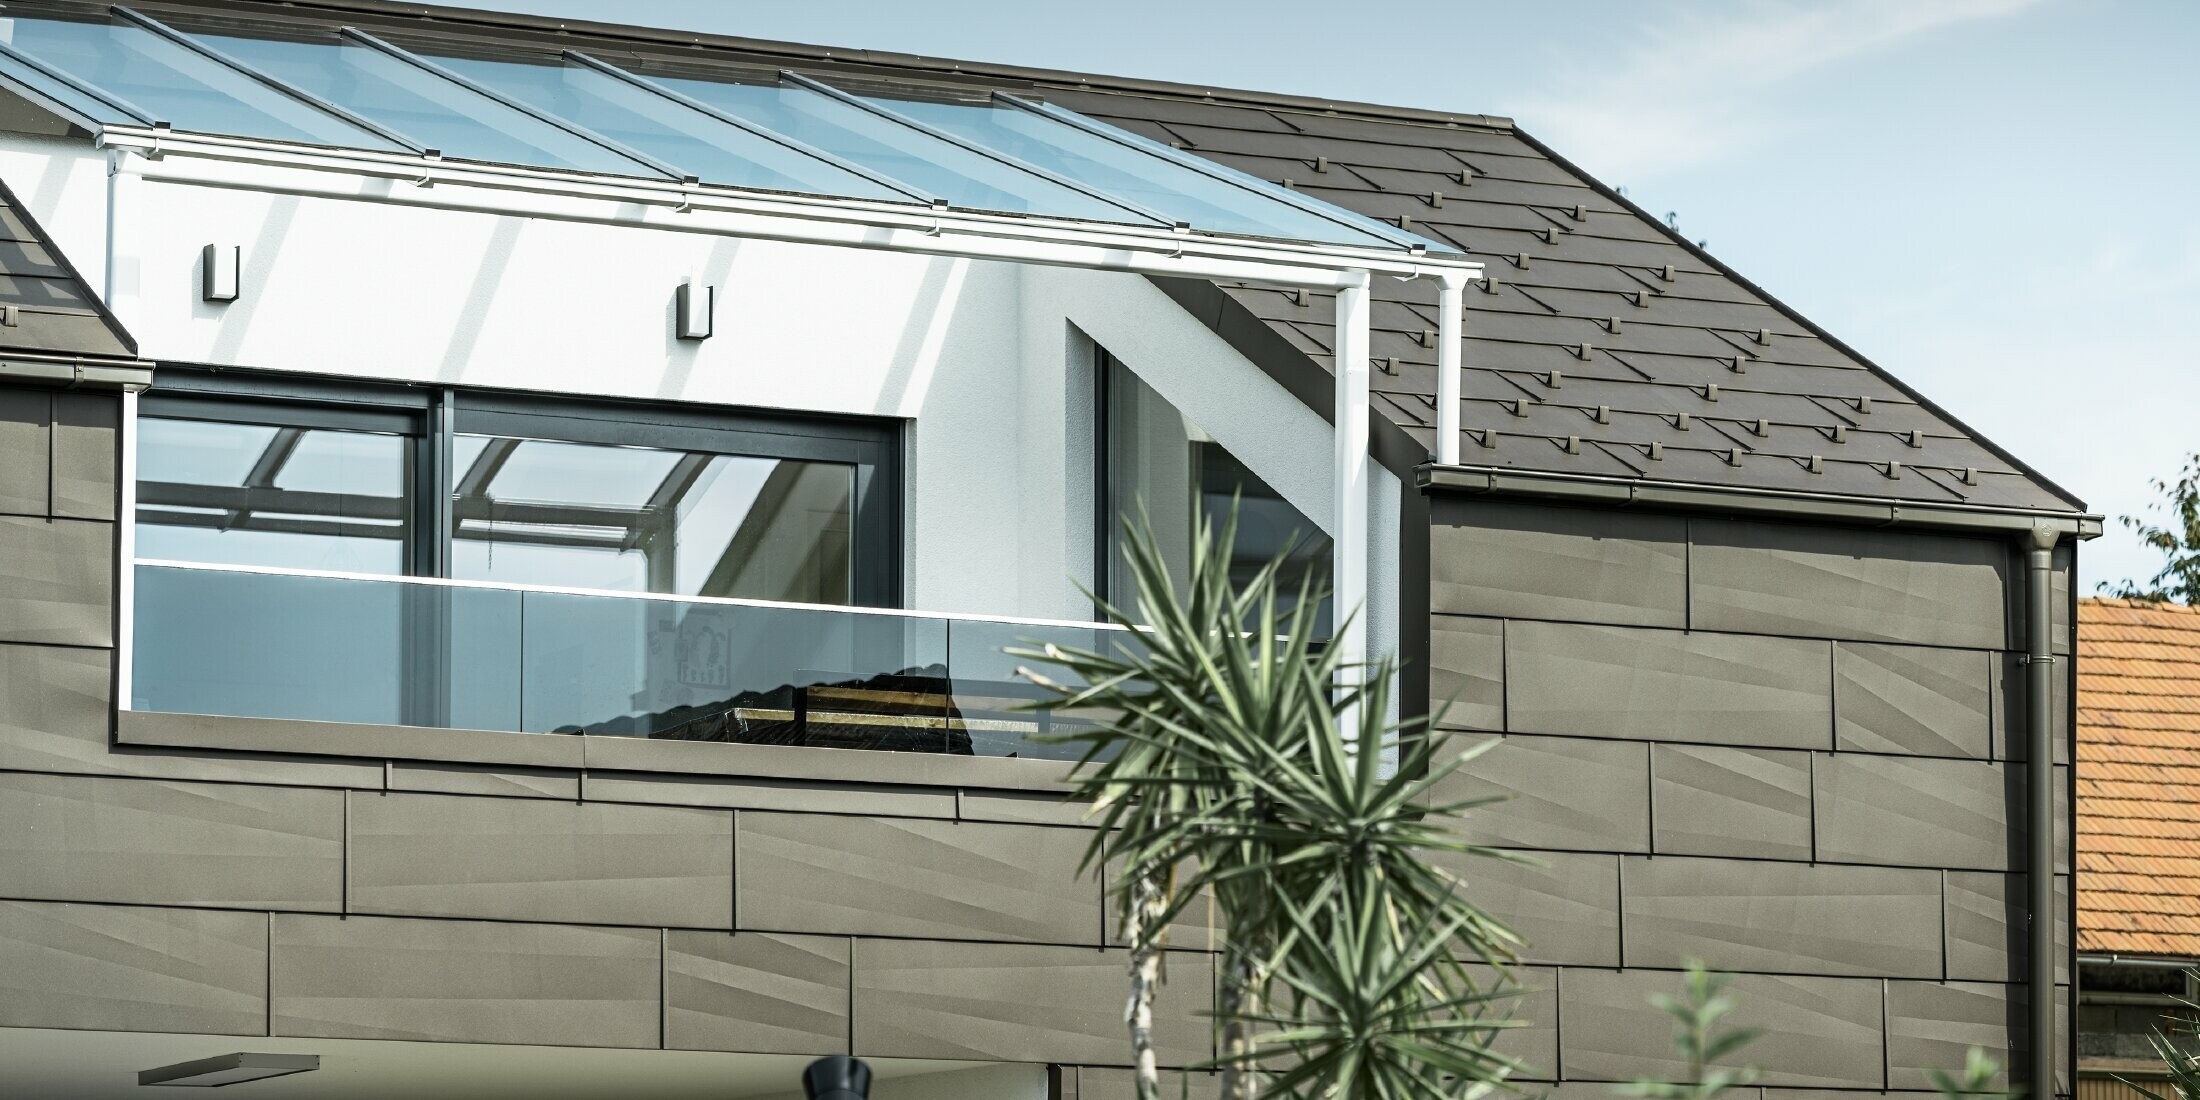 Tillbyggnad med takterrass beklädd med PREFA komplettsystem, på taket och på fasaden användes PREFA tak- och fasadpanel FX.12. Dessutom kommer PREFA rektangulära lådränna tillsammans med PREFA stuprör i brunt samt flera tillbehör som kan användas till takavvattning.